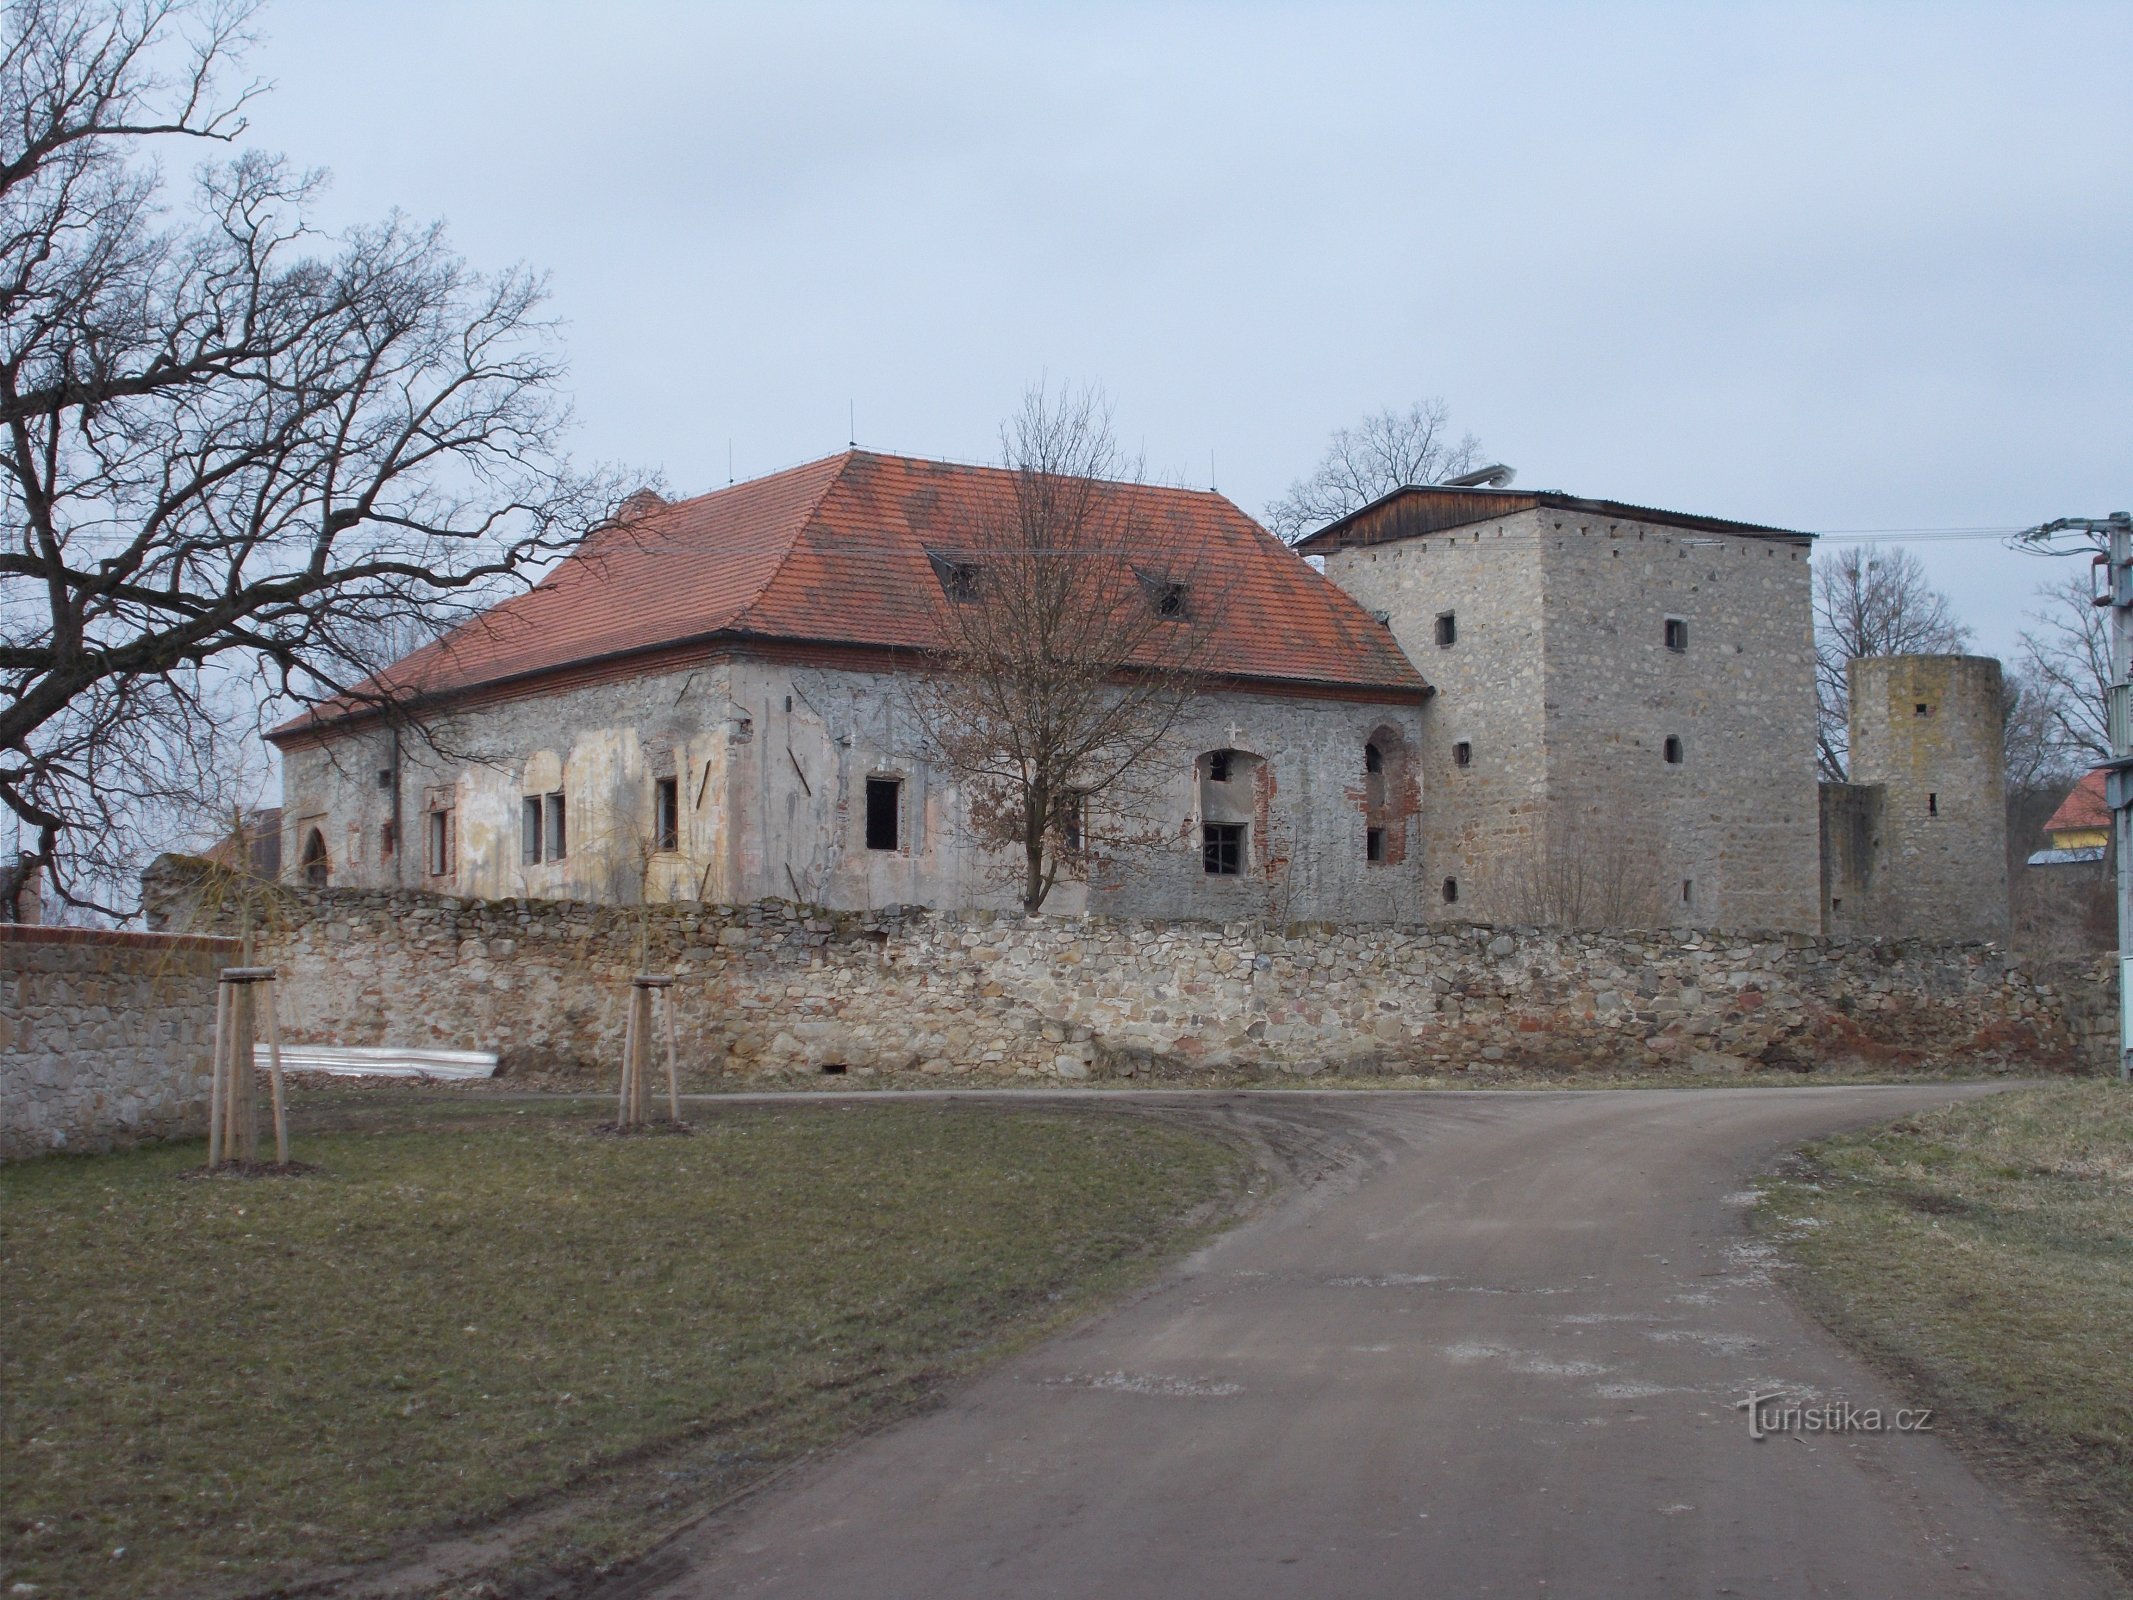 Kestřany - Øvre fæstning